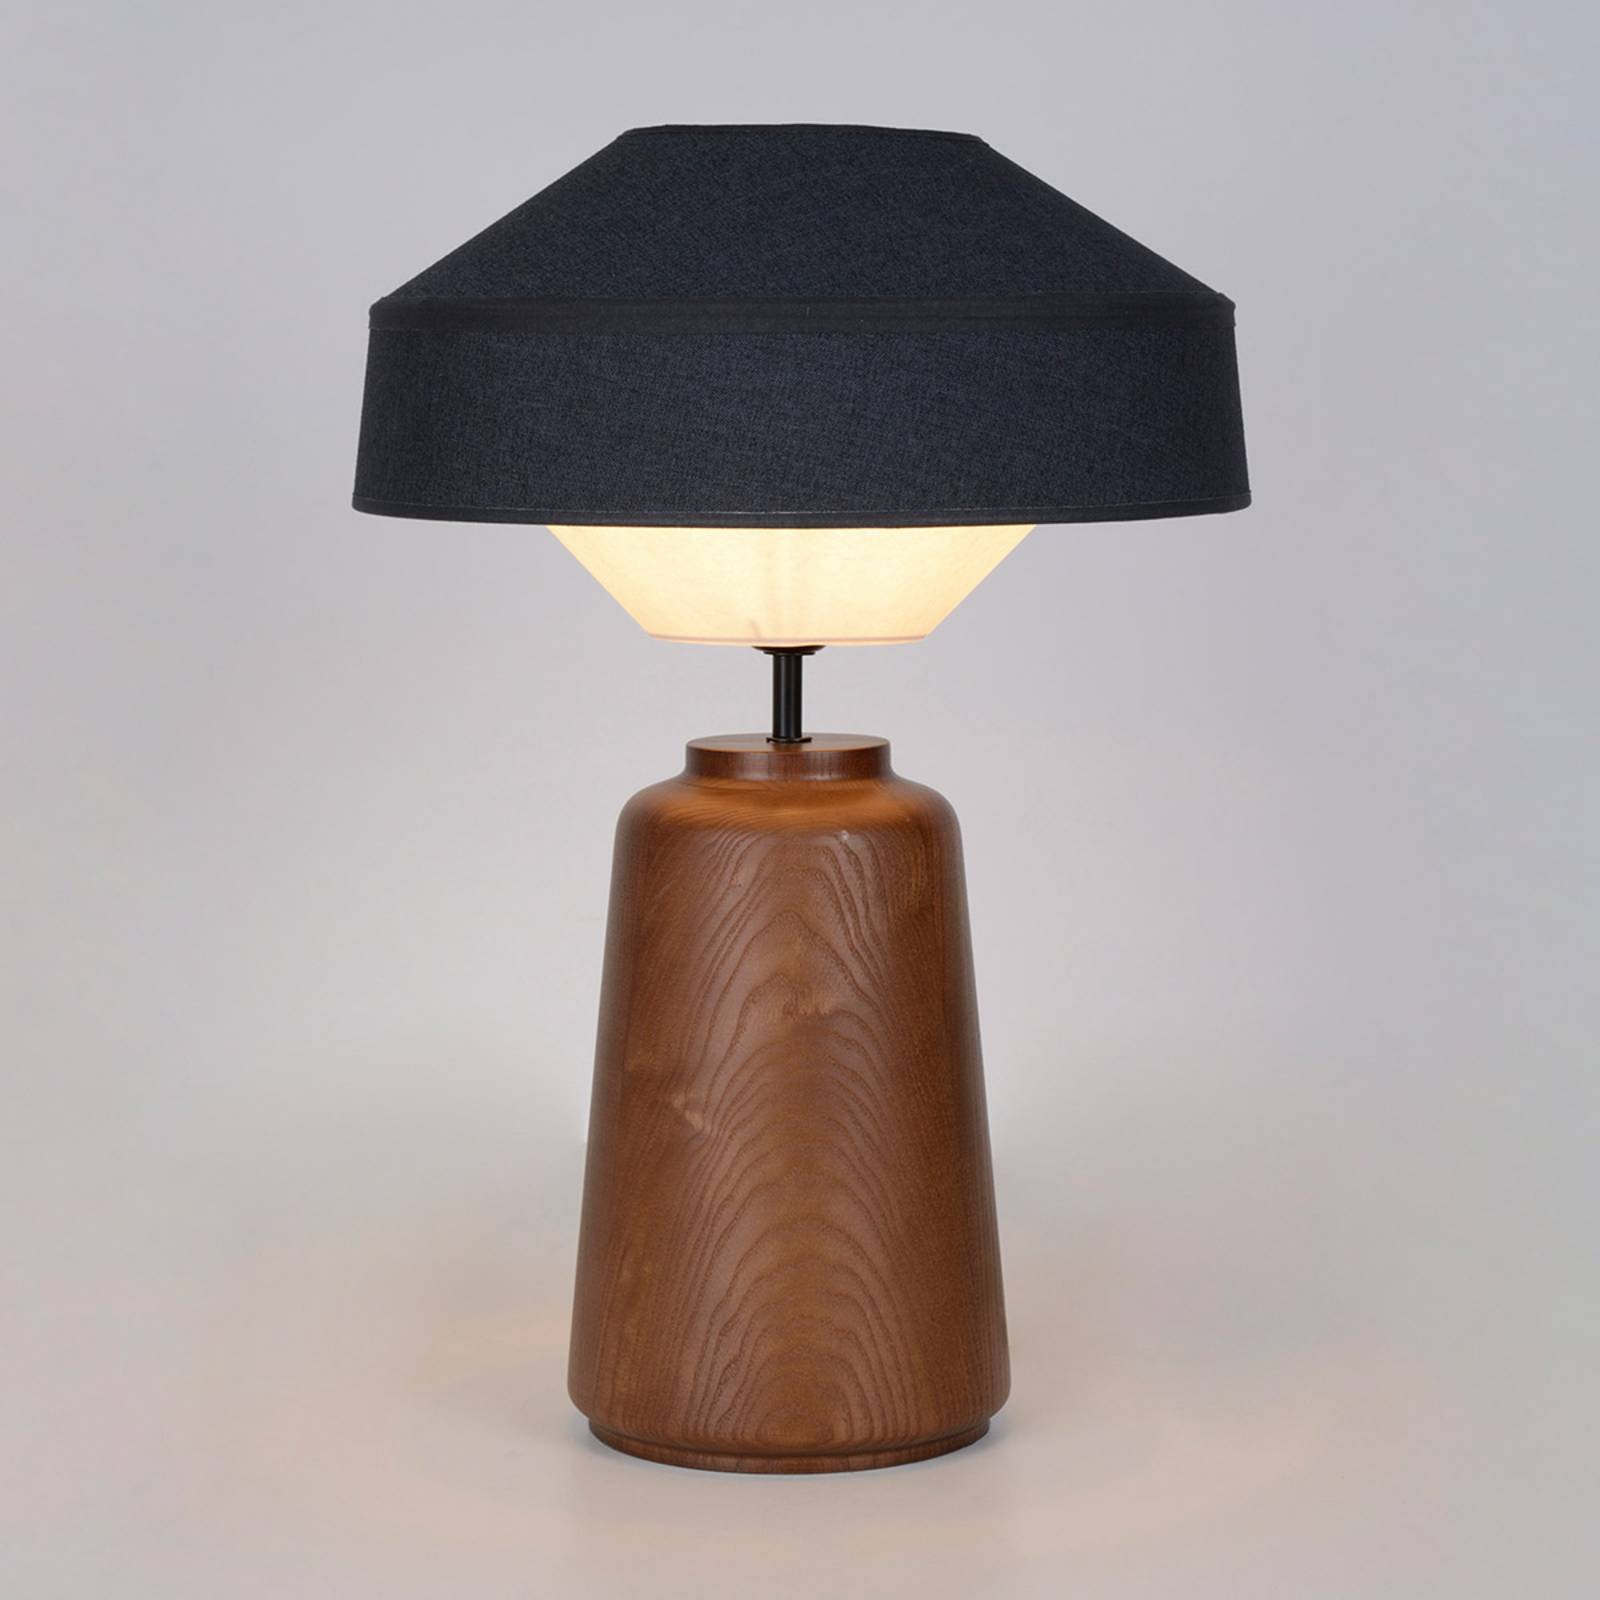 MARKET SET Mokuzaï stolová lampa suna, výška 55 cm